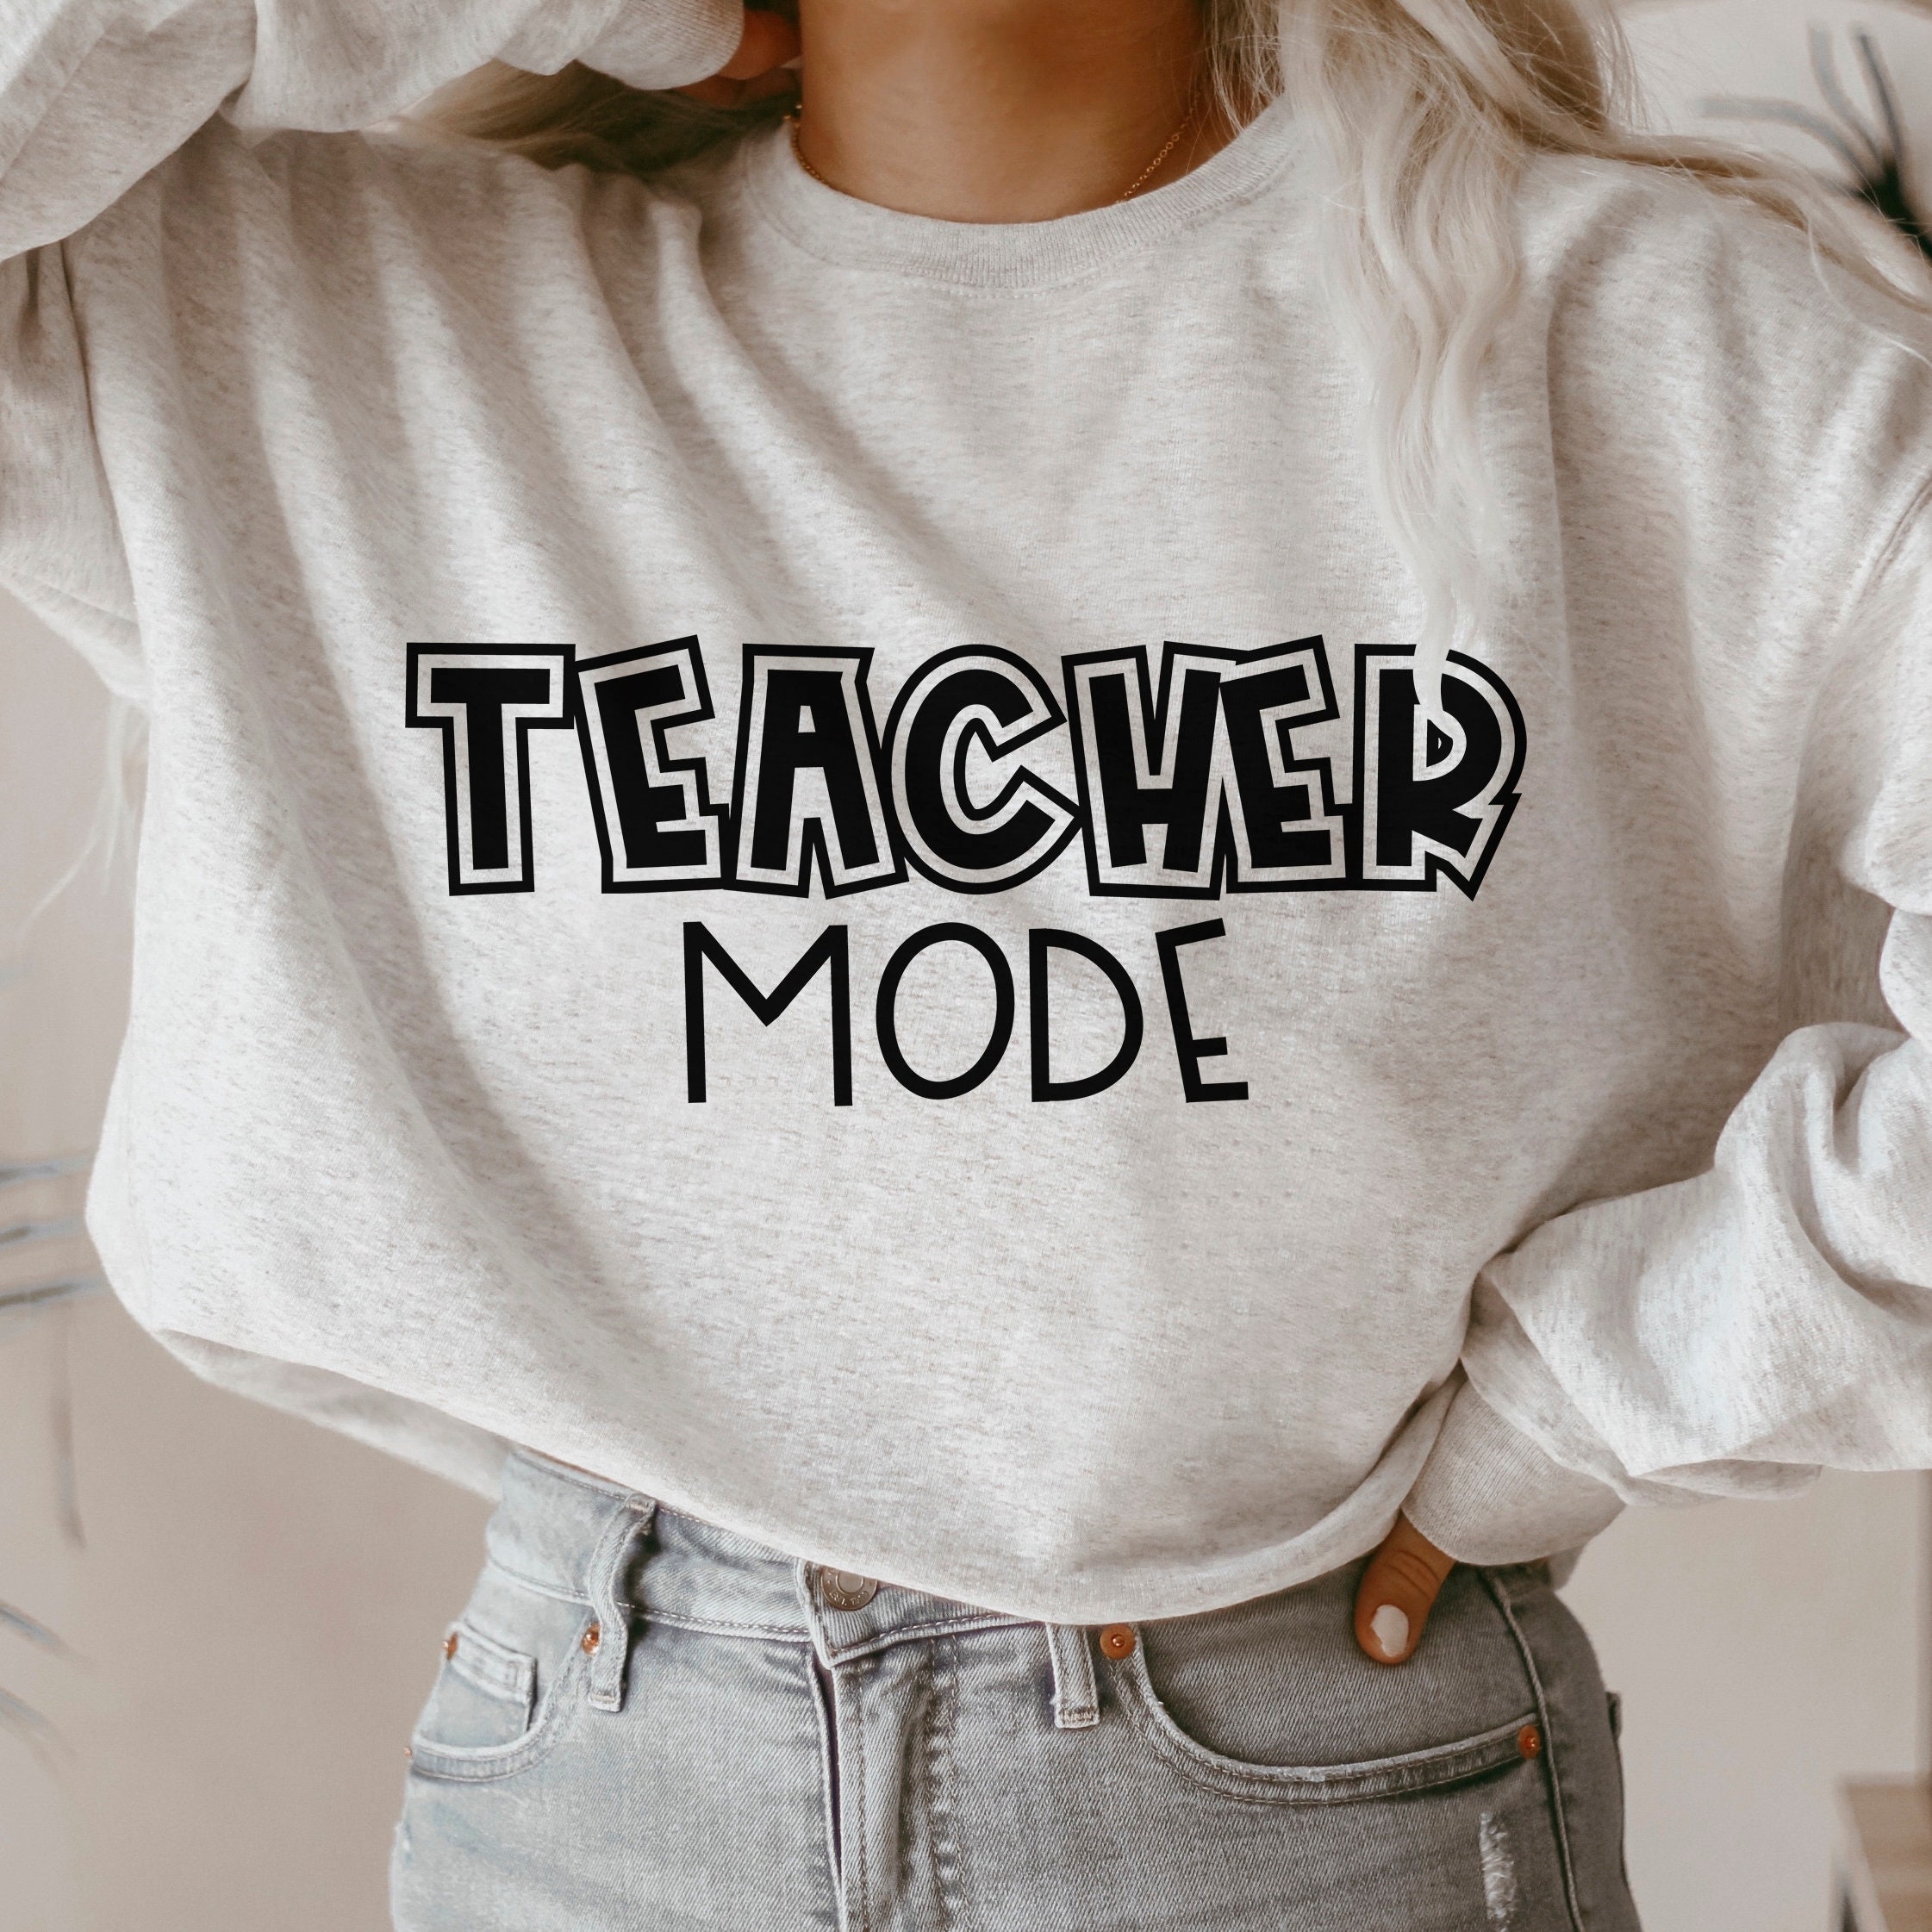 Teacher mode svg teaching svg files gift for teacher | Etsy